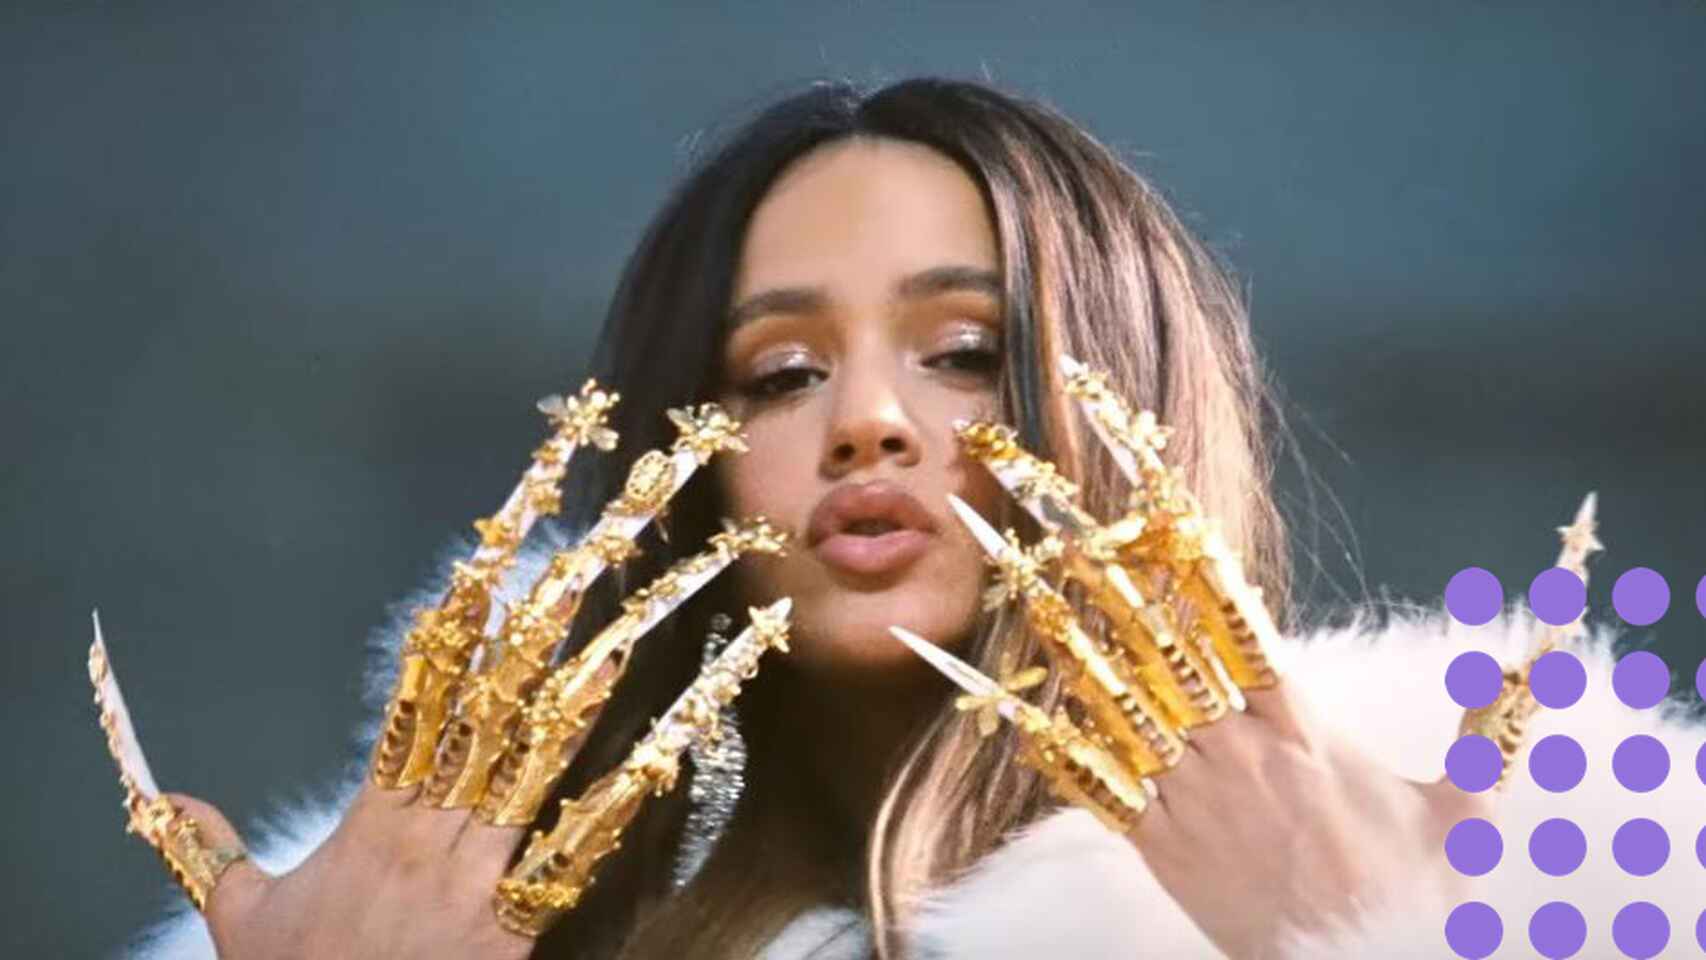 La cantante barcelonesa Rosalía mostrando sus uñas doradas / RRSS